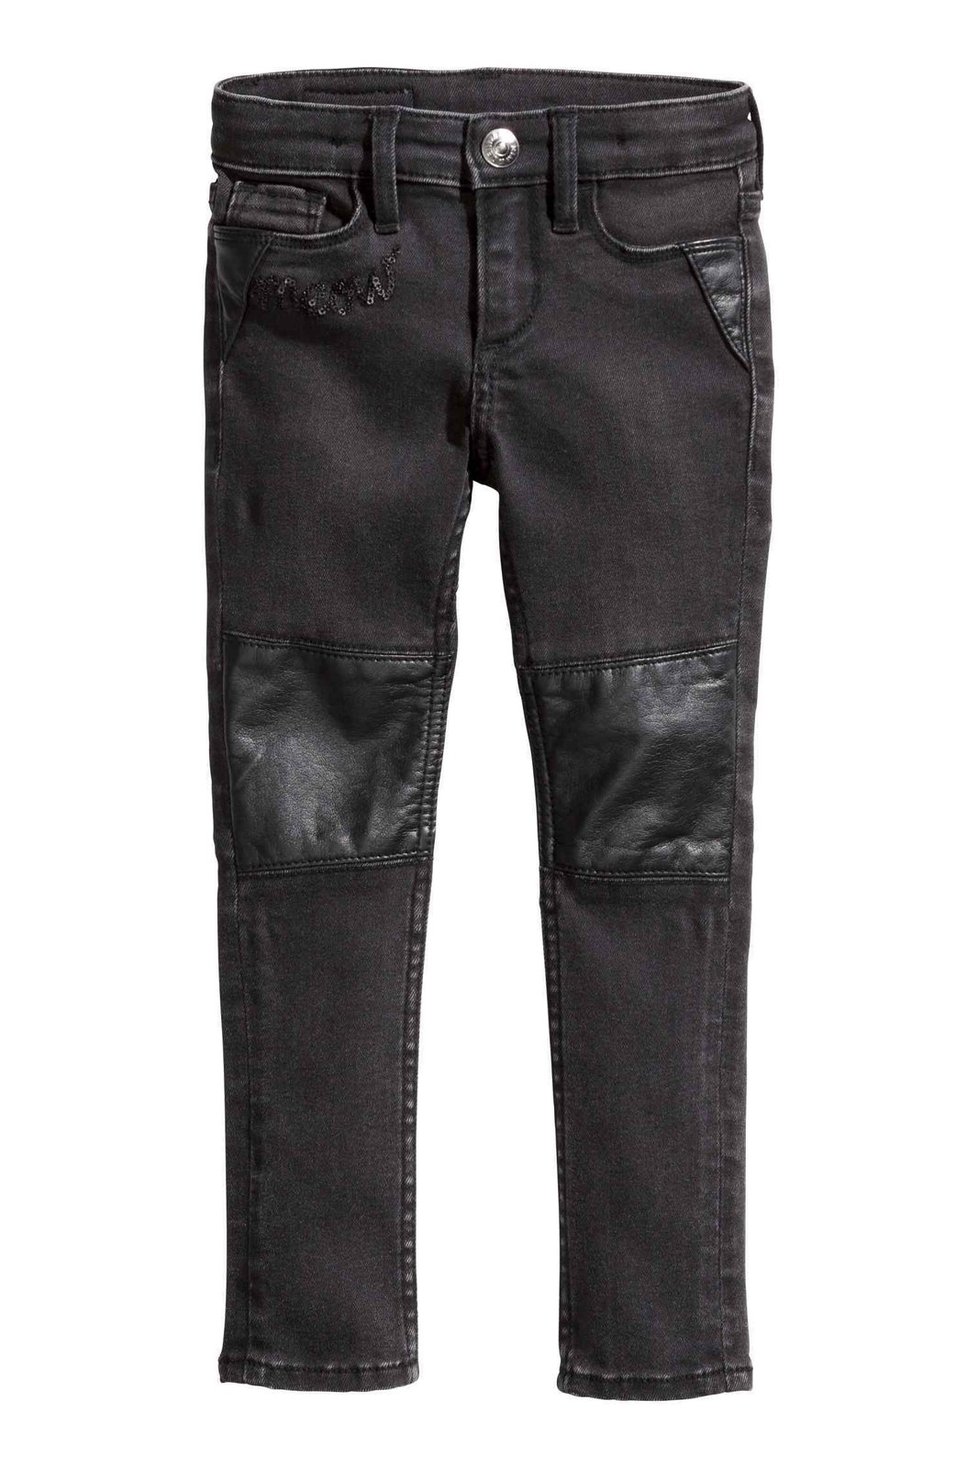 Džíny s koženkovou aplikací, H&M, 599 Kč